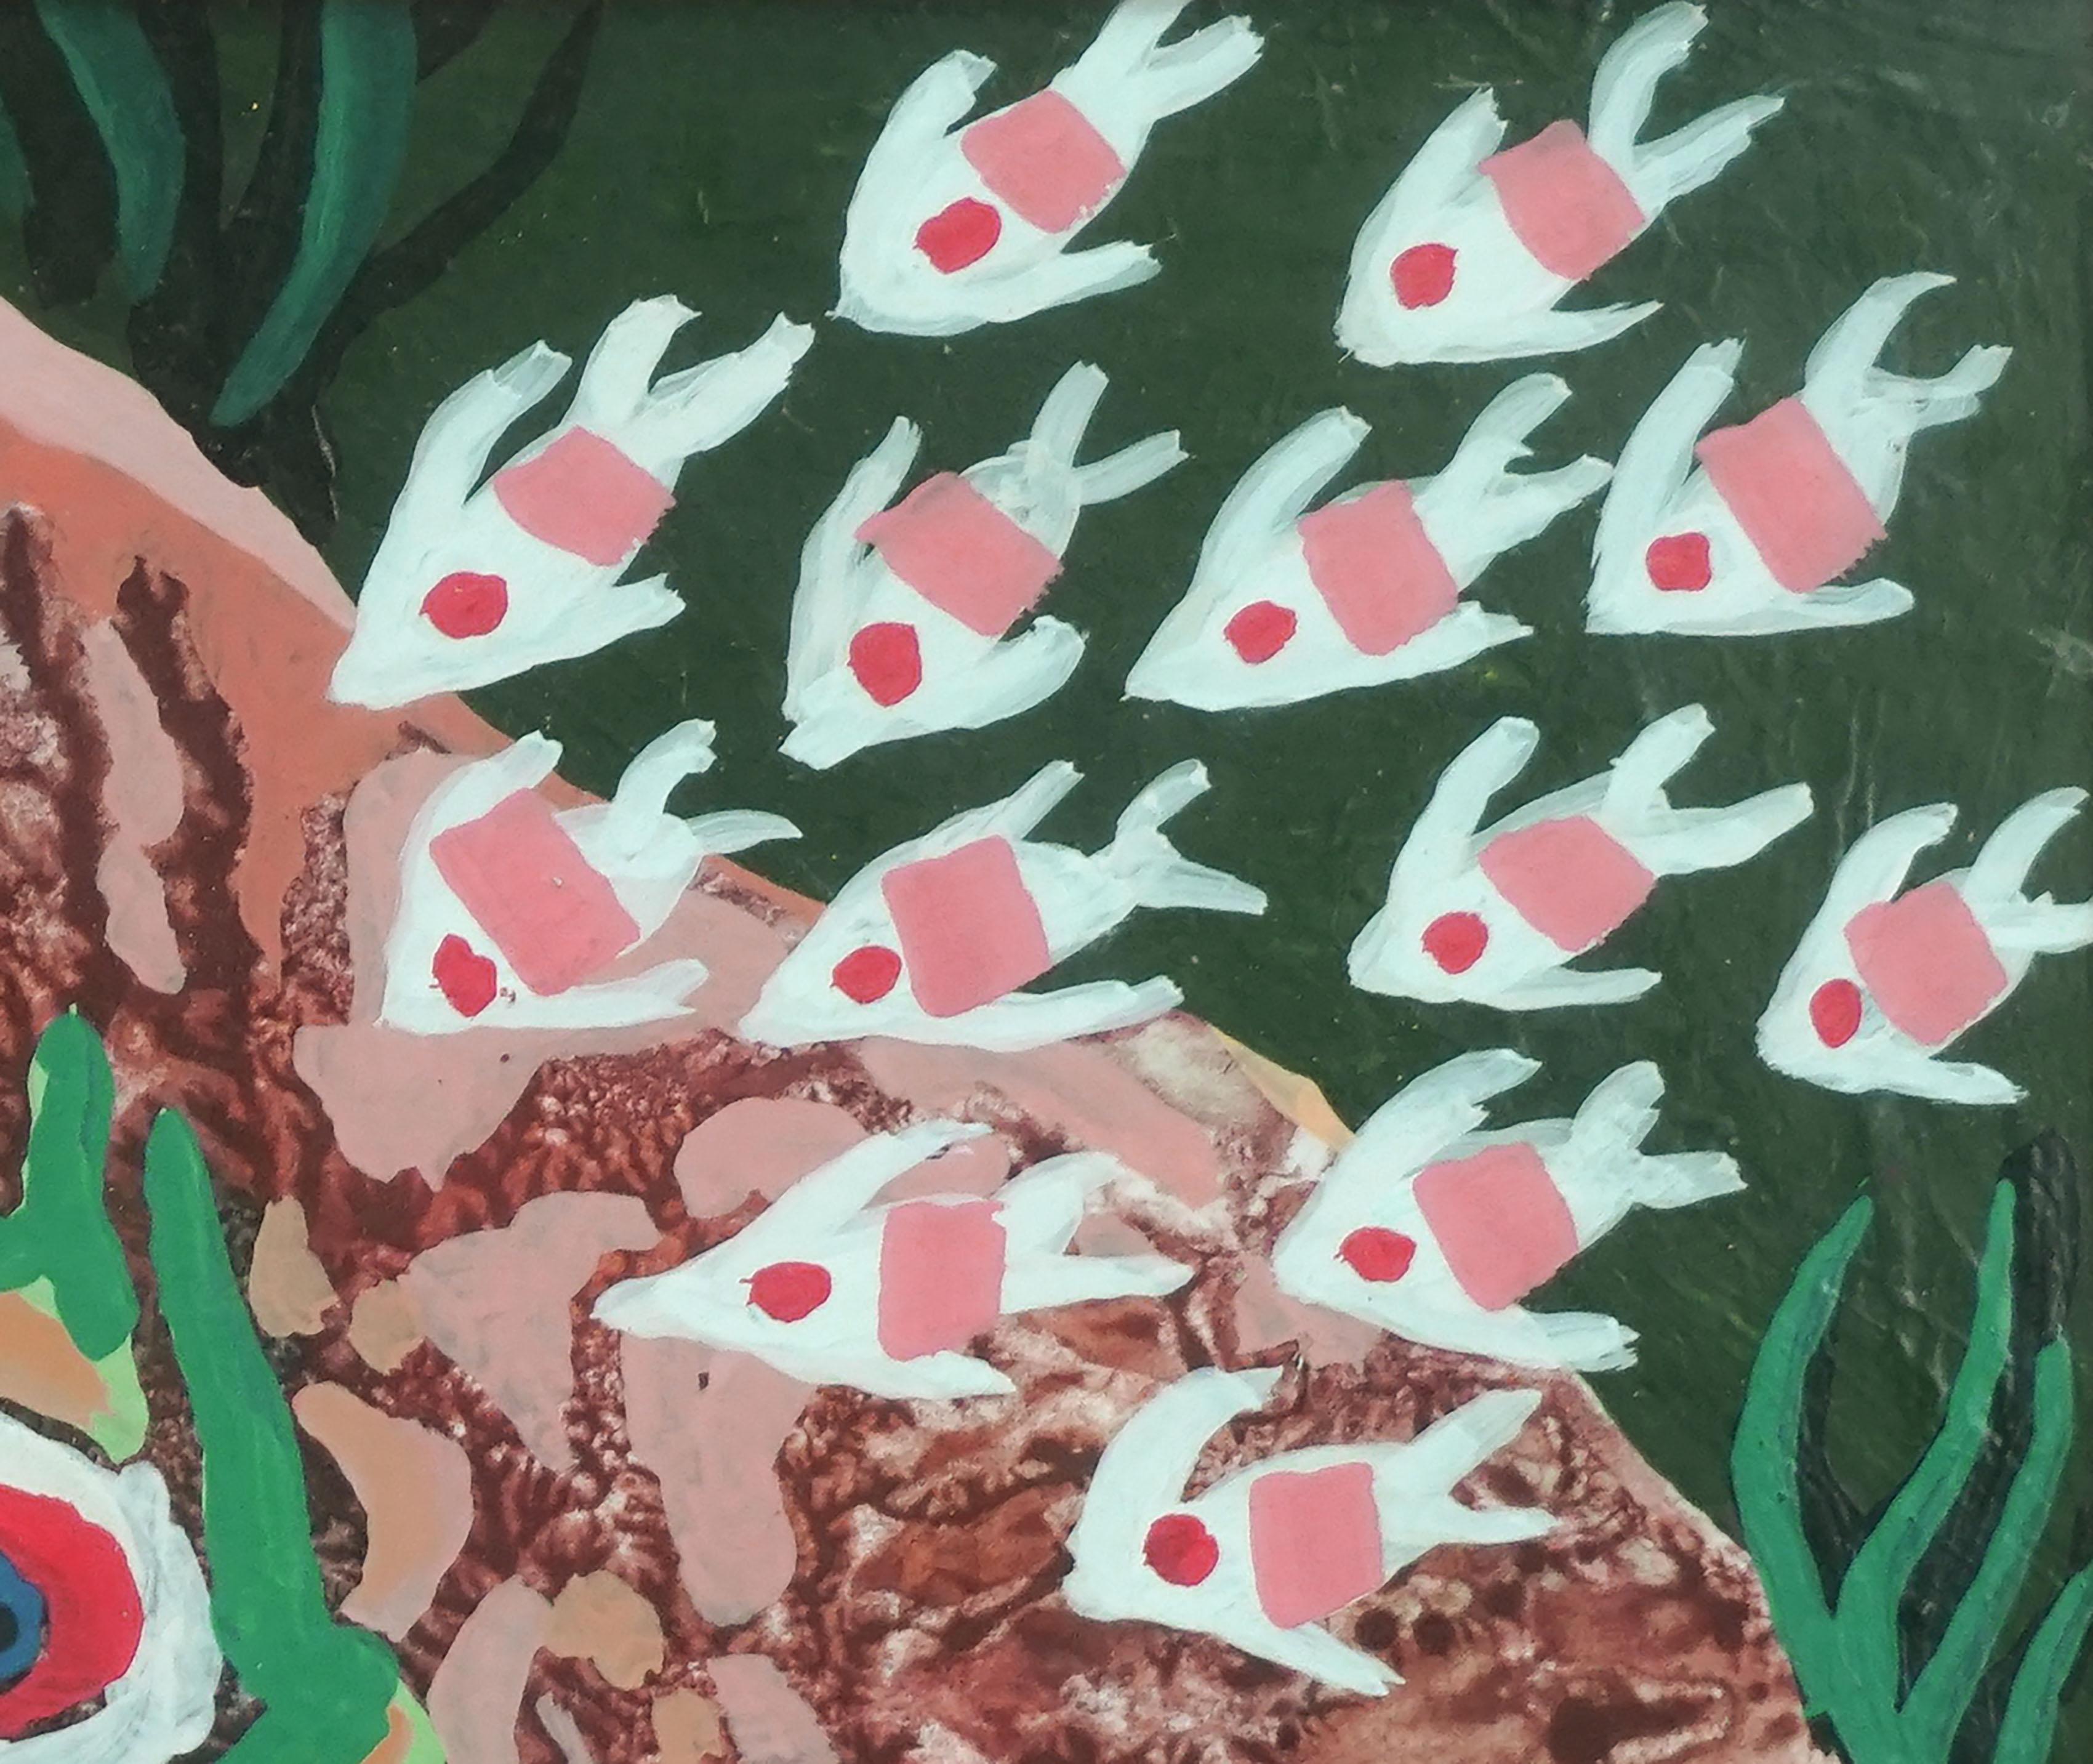 Figurative vibrante de poissons abstraits dans un récif corallien par John Stenvall (américain, 1907- 1998), vers 1990. Signé bord gauche. Présenté dans un cadre doré sous verre. Taille de l'image : 6 